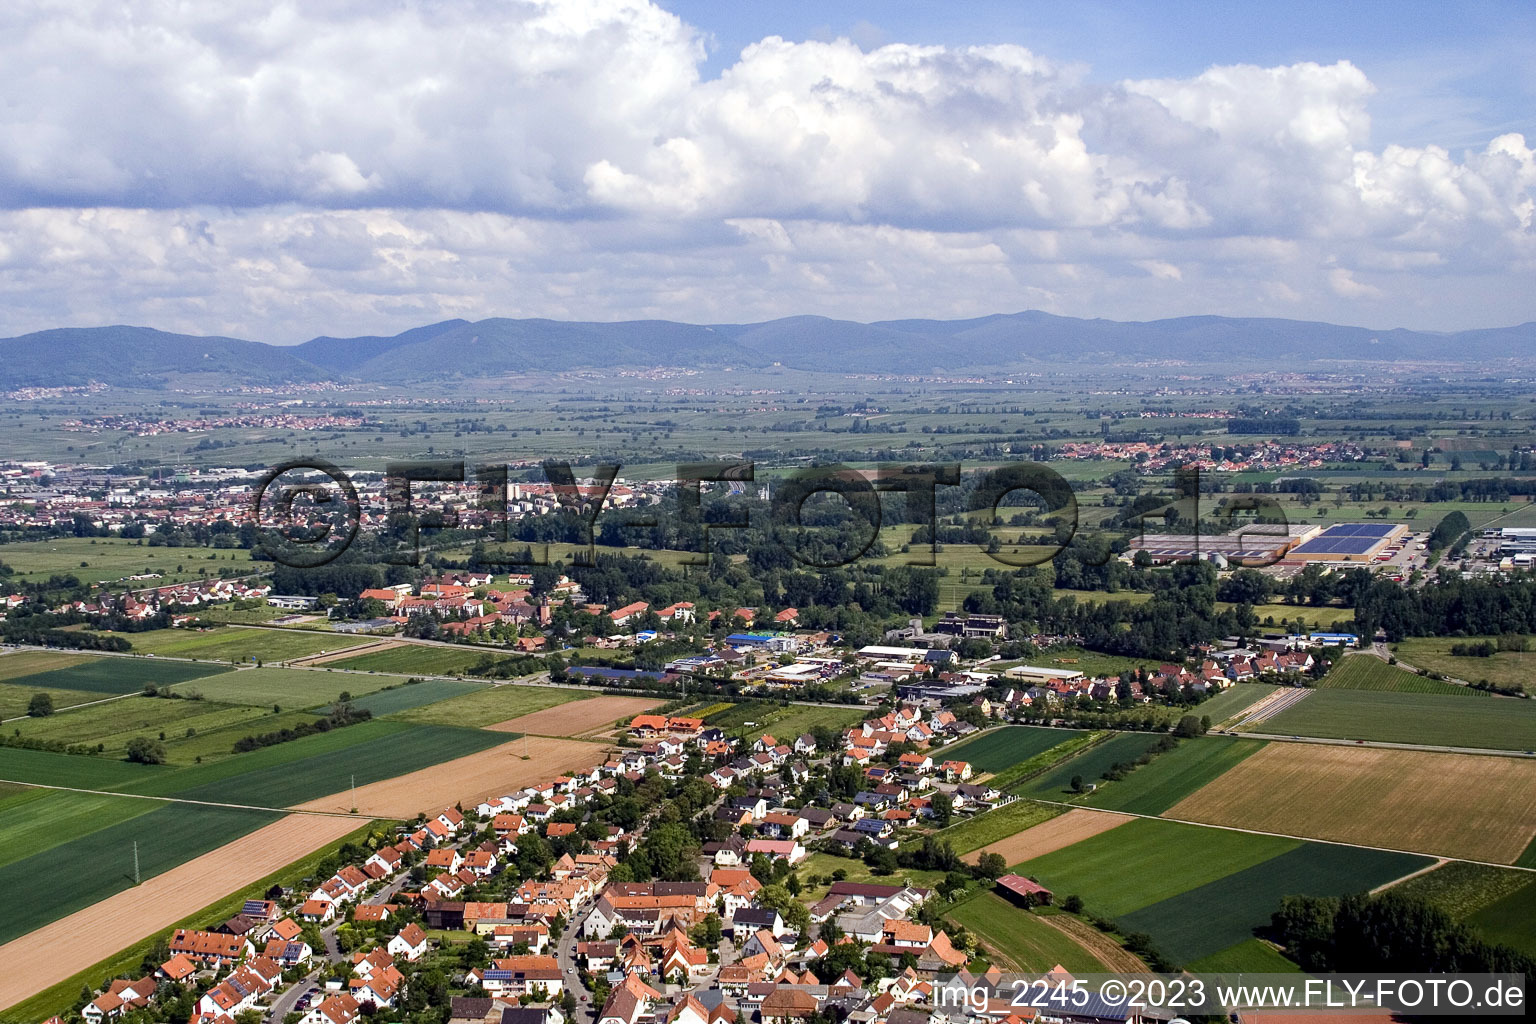 Ortsteil Mörlheim in Landau in der Pfalz im Bundesland Rheinland-Pfalz, Deutschland aus der Drohnenperspektive